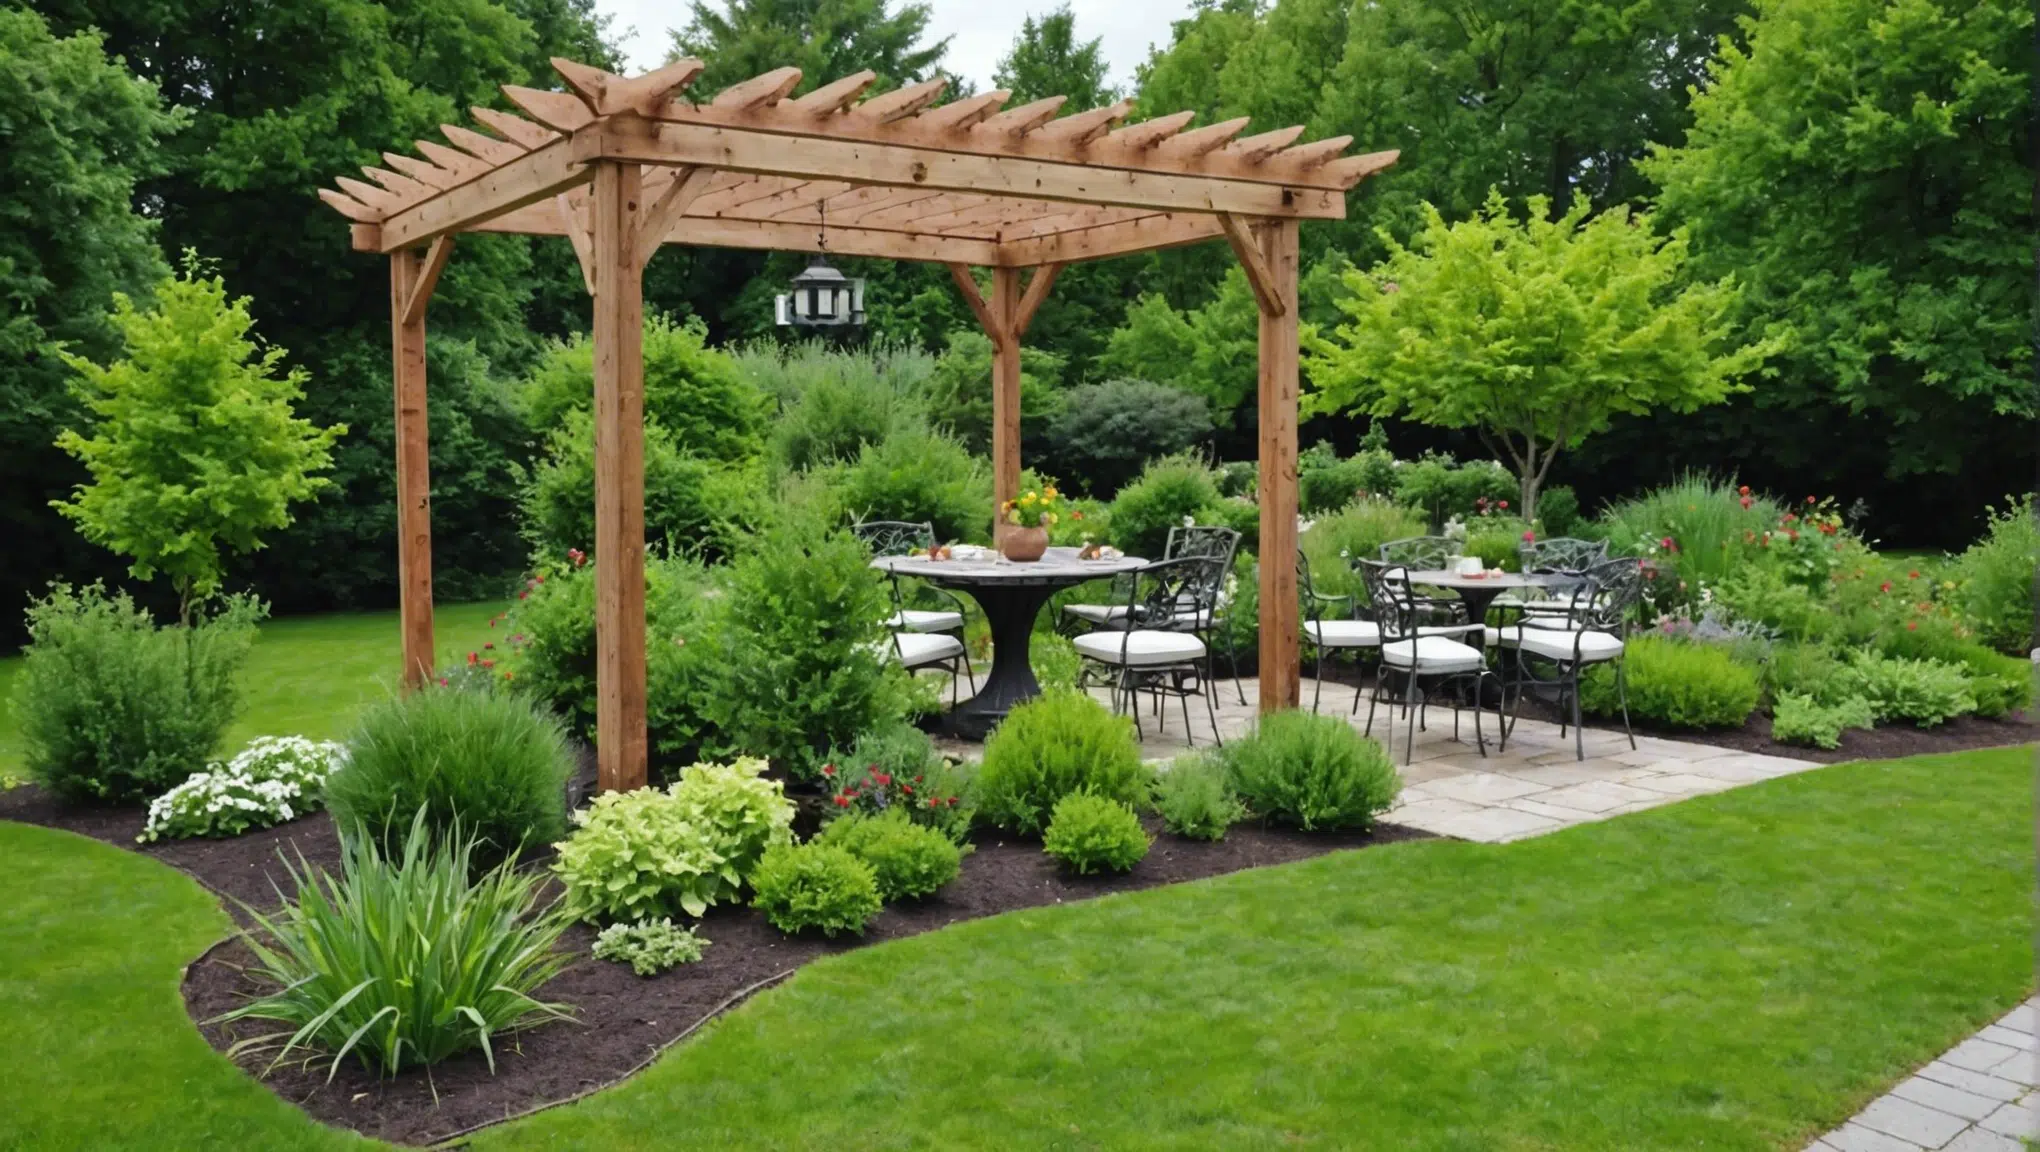 transformez votre jardin en un paradis de saveurs grâce à ces 10 astuces secrètes ! découvrez comment faire de votre espace extérieur un lieu gourmand et enchanteur.